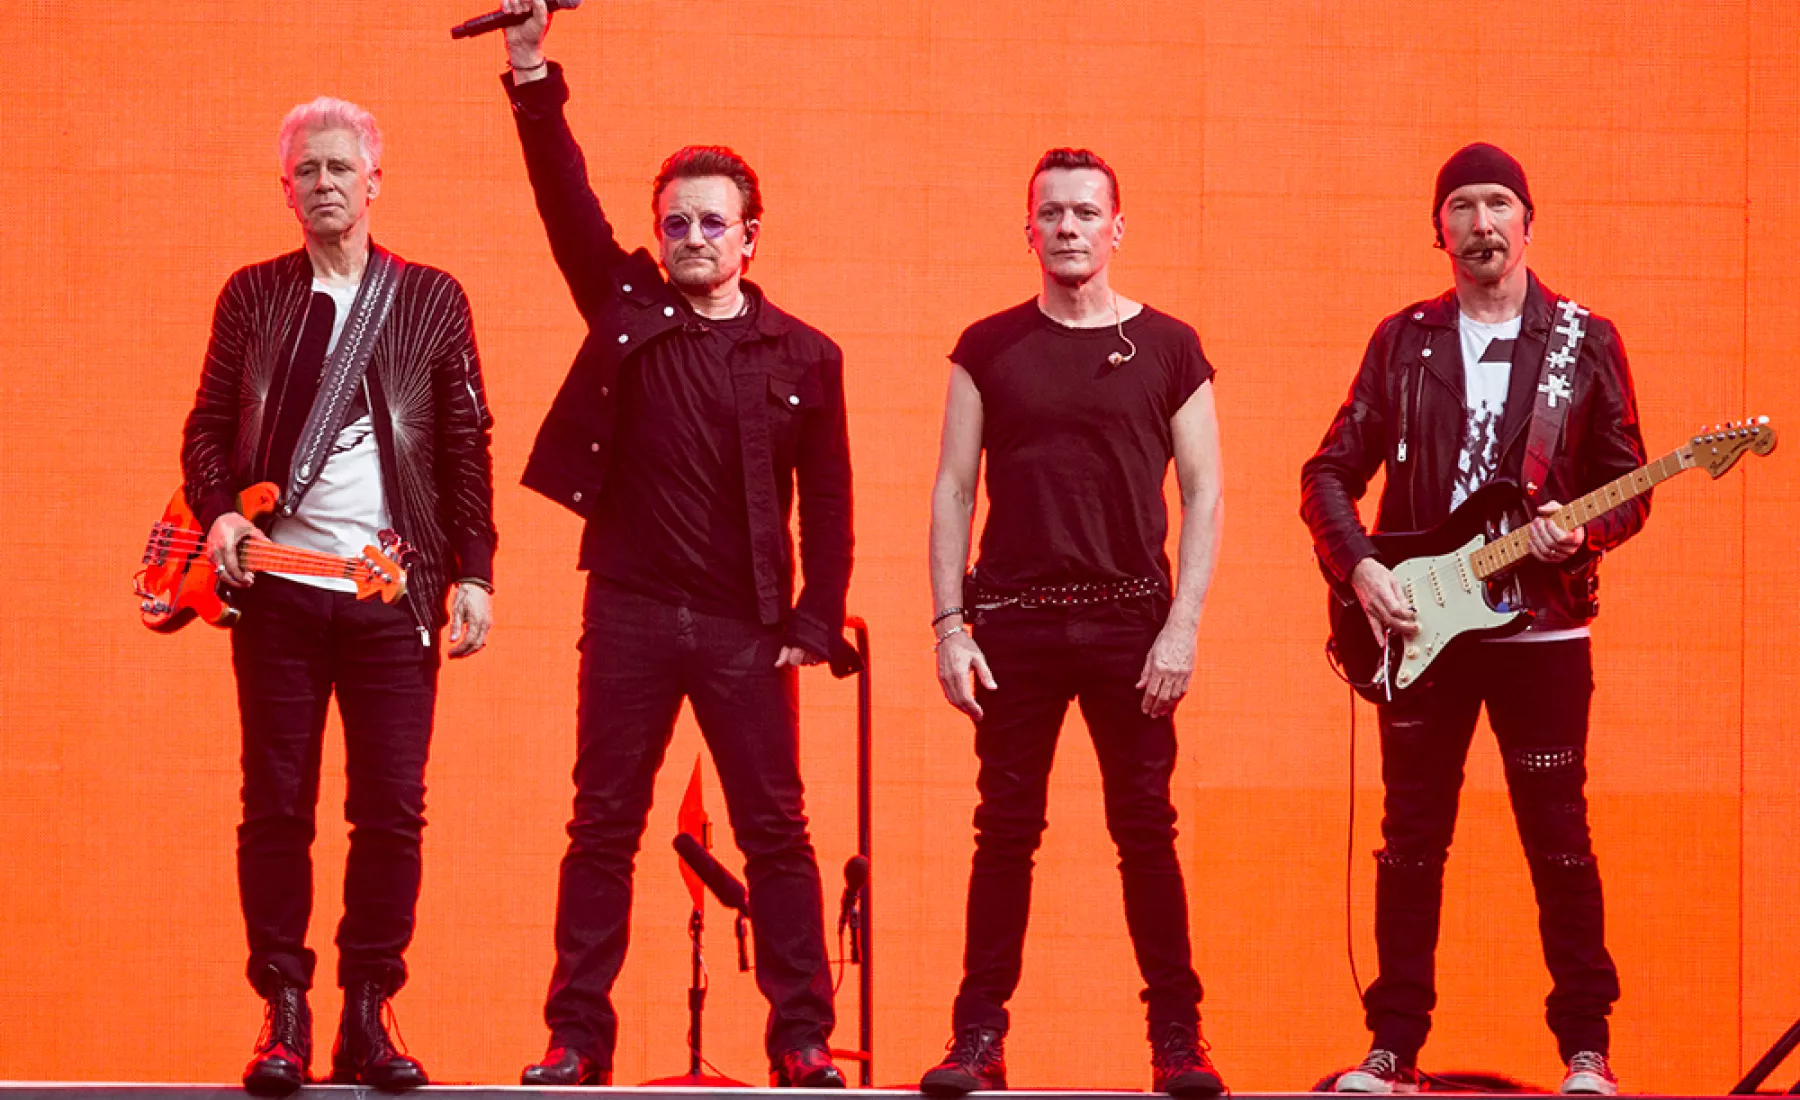 Die Band U2 spendet 10 Millionen Euro im Kampf gegen Corona